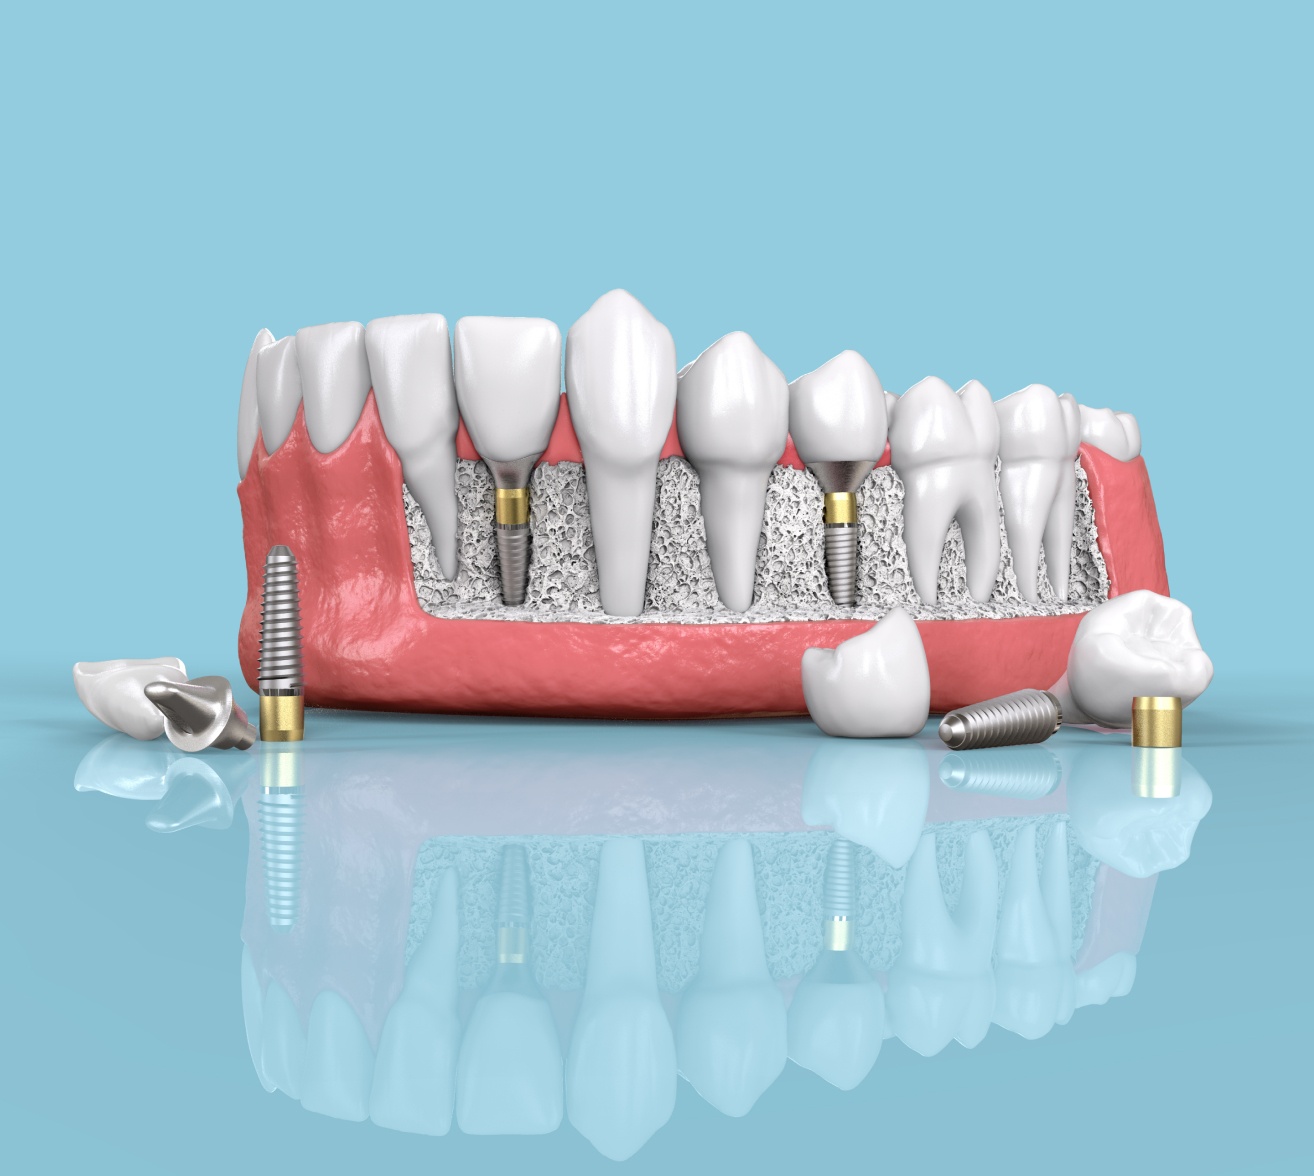 Implant dentaire | implant dentaire pas cher | Institut de chirurgie du visage | Bordeaux